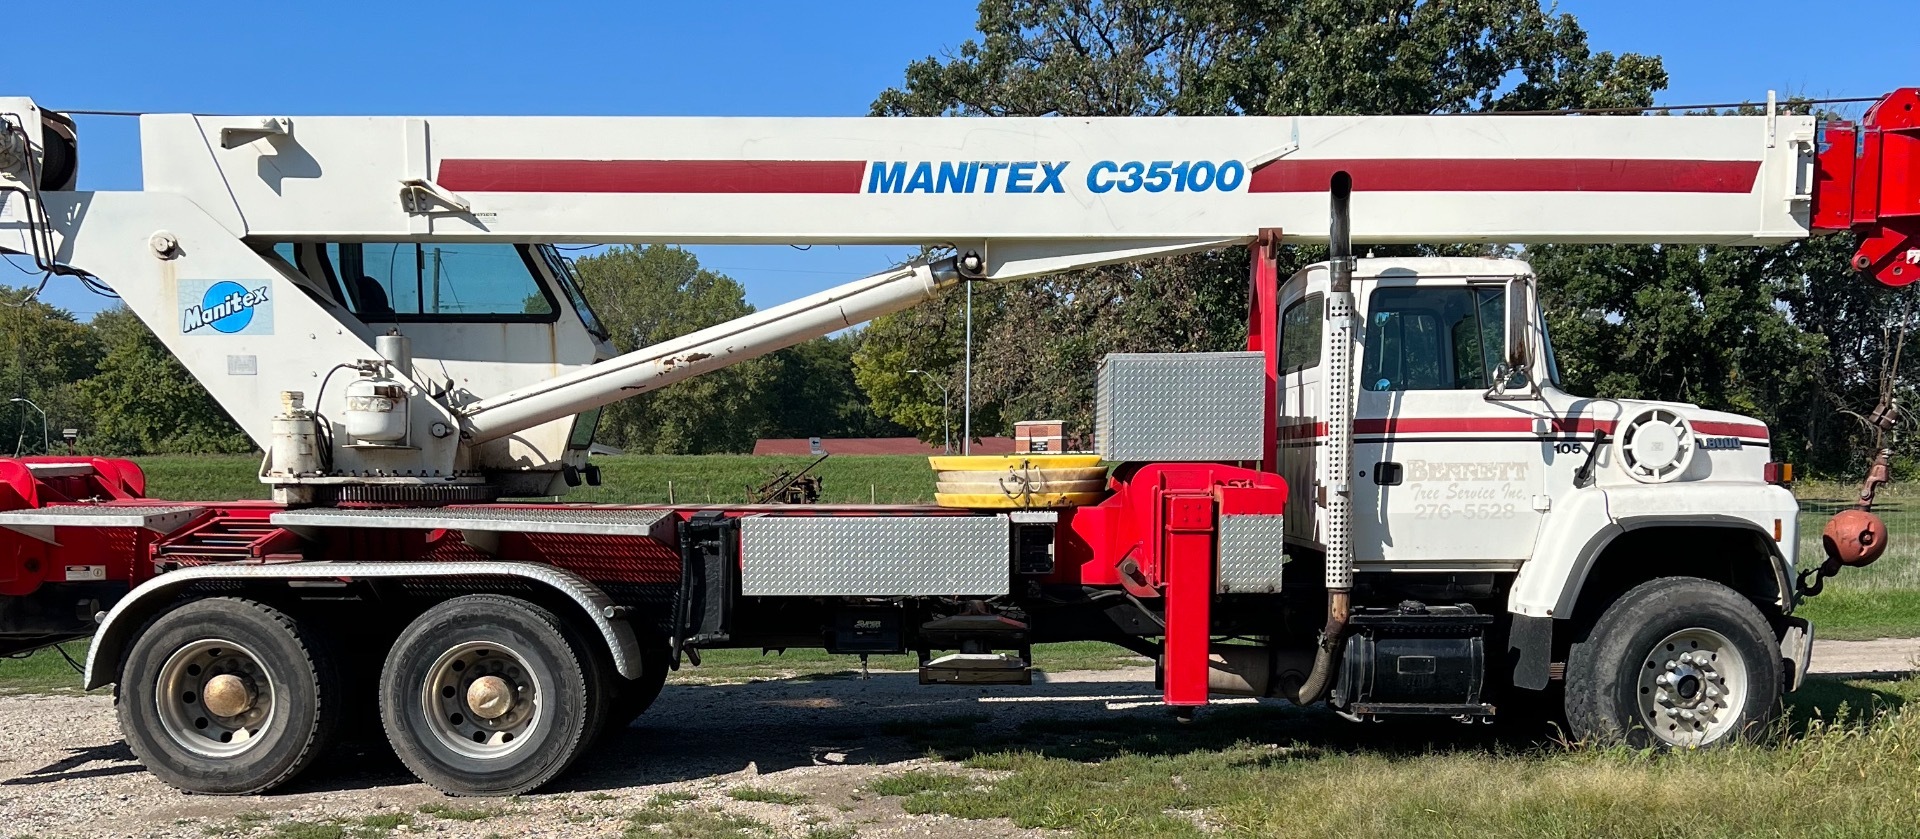 Manitex 35100 C